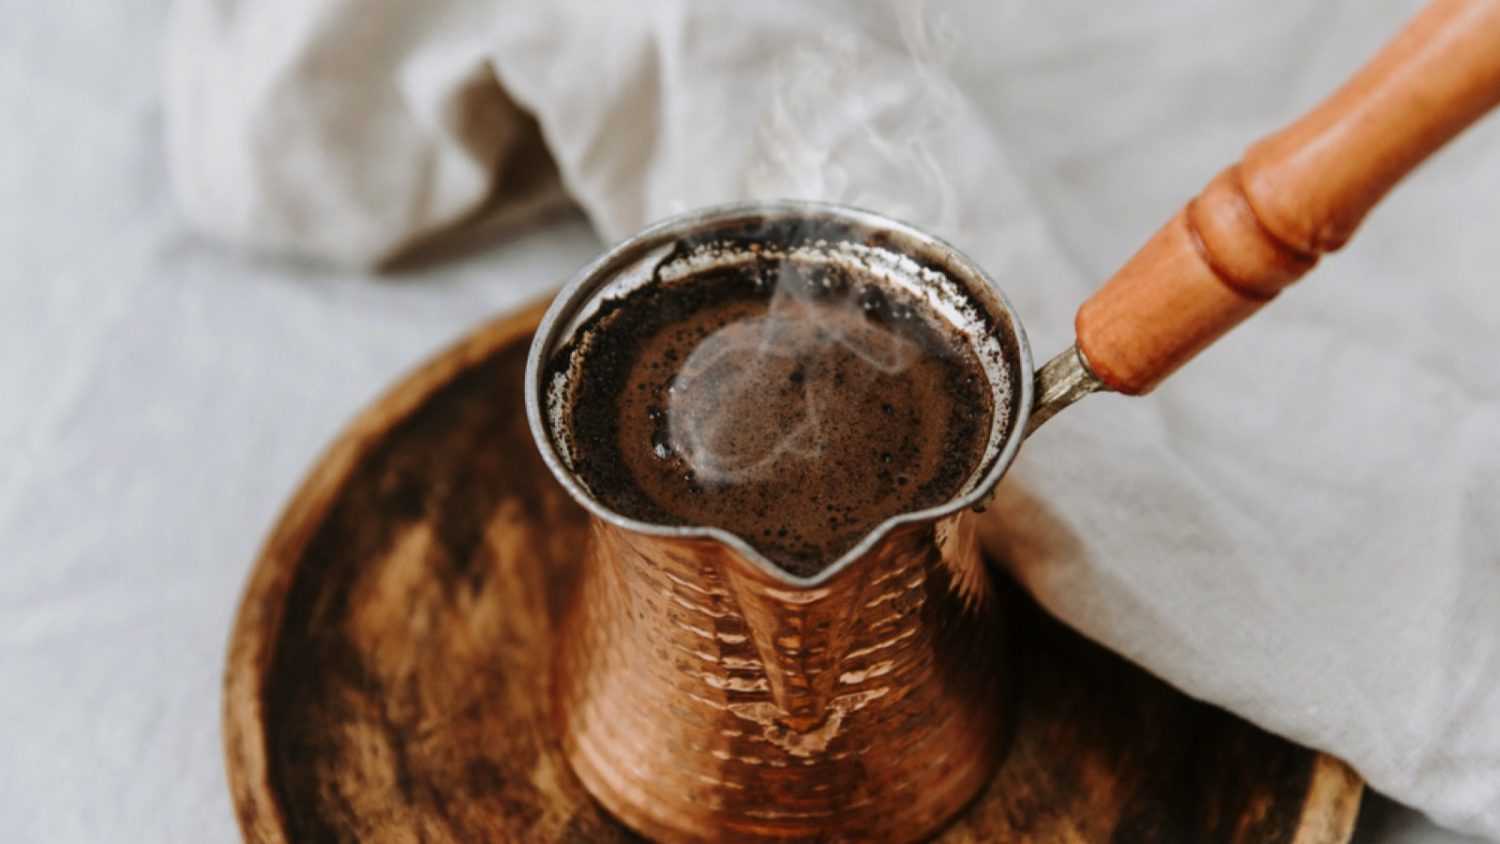 Turkish Coffee Cups